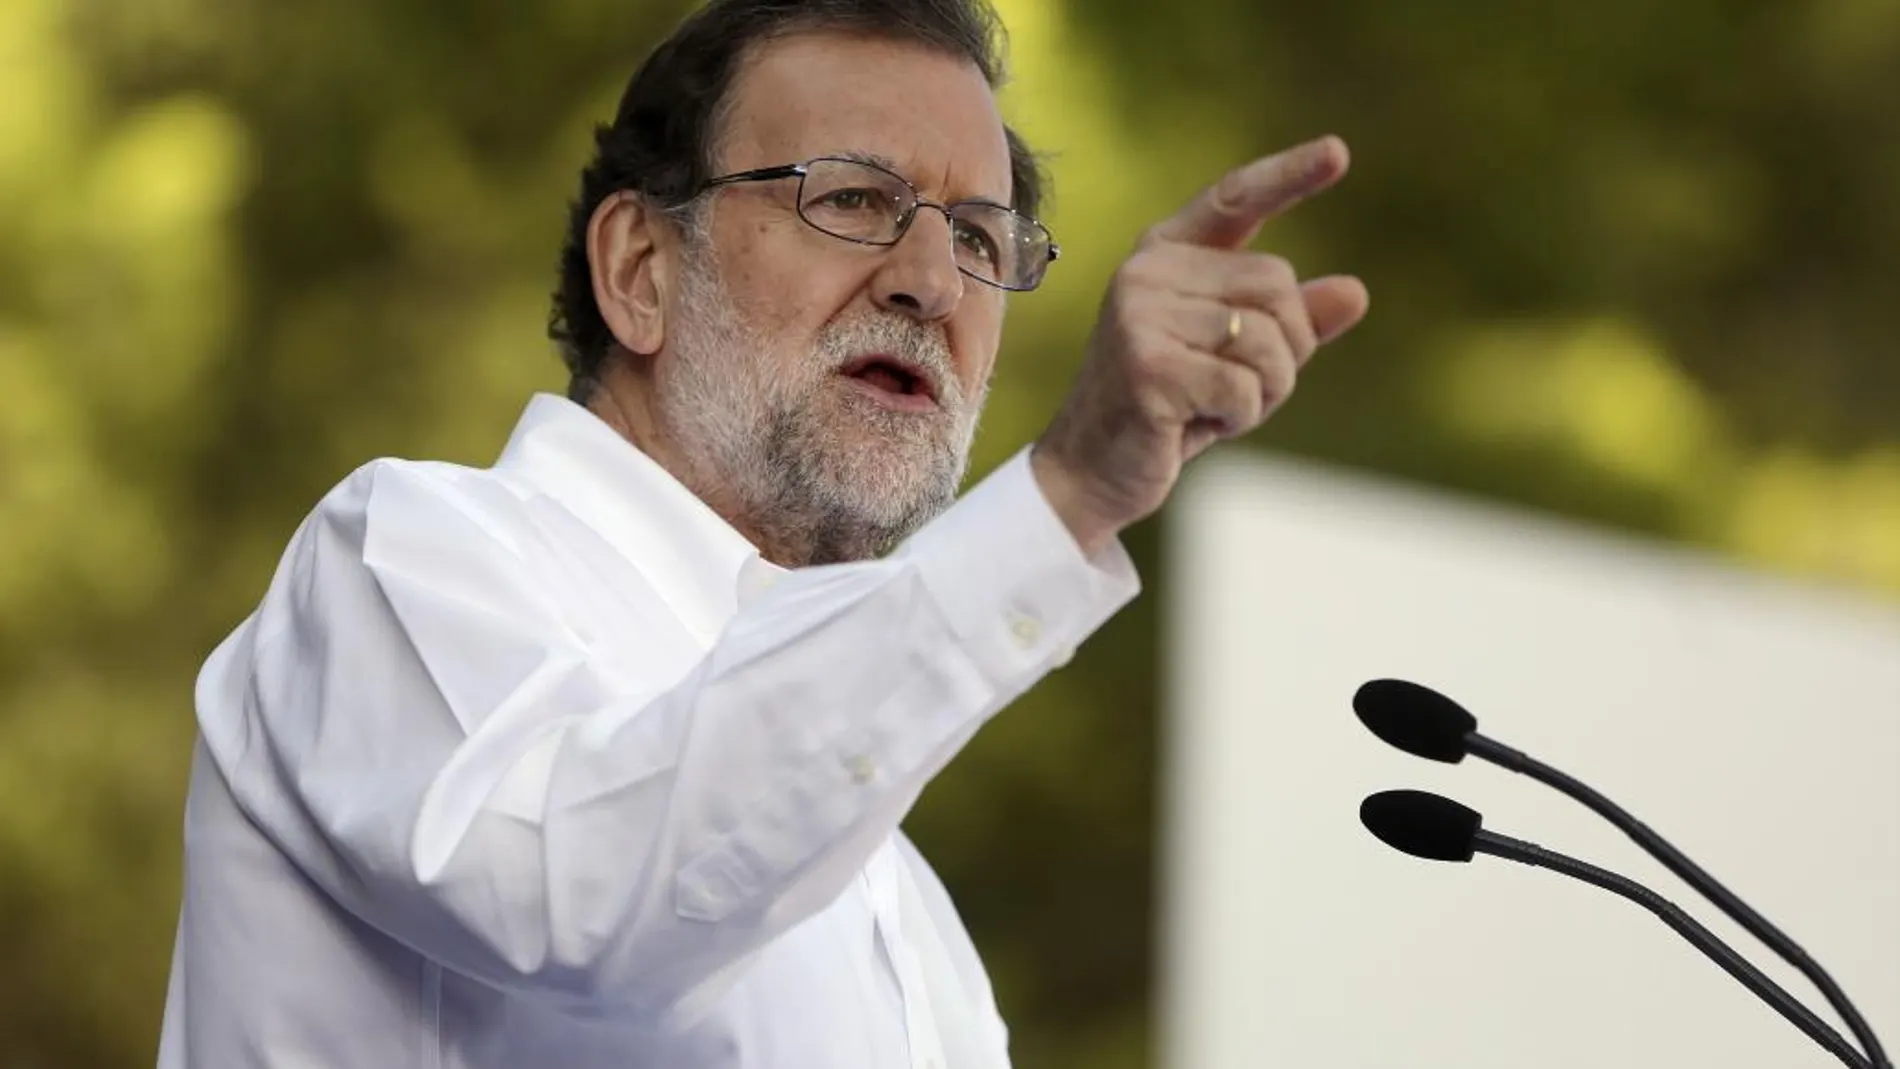 El jefe del Ejecutivo en funciones, Mariano Rajoy